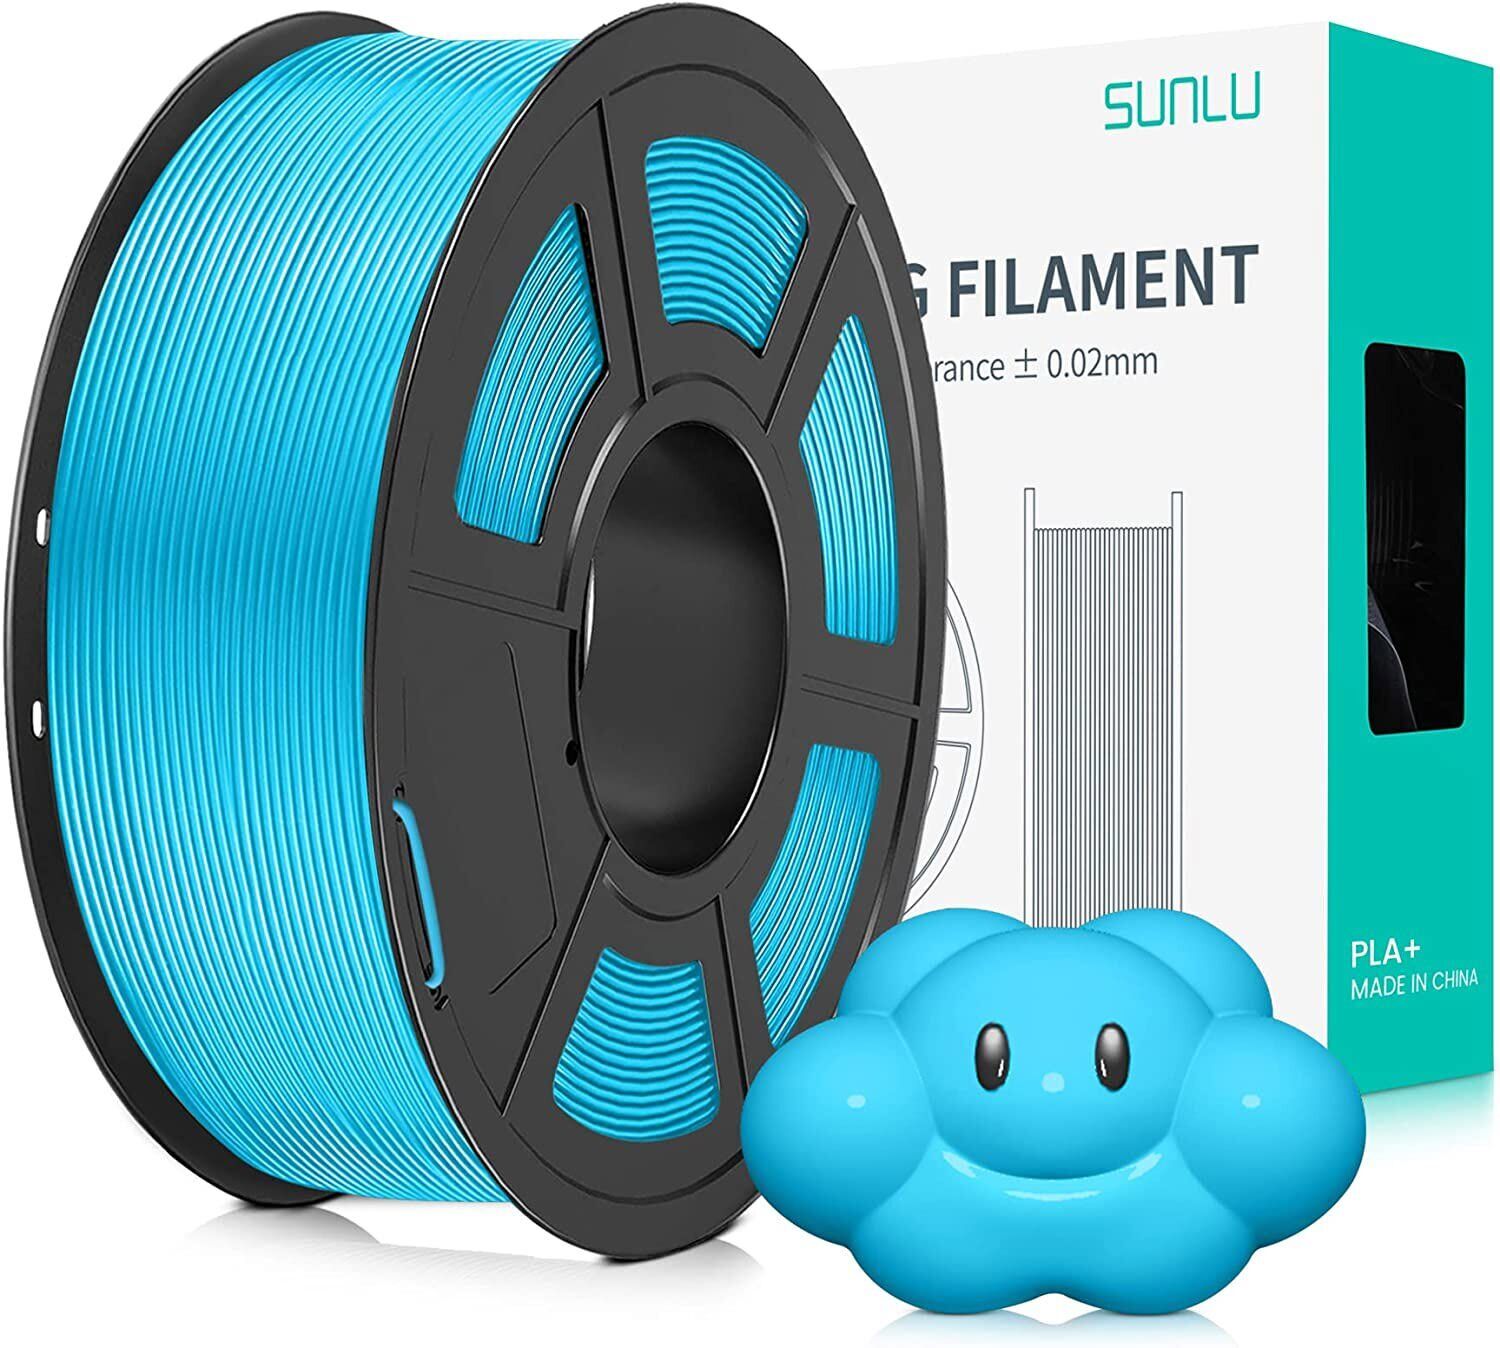 SUNLU ASA Filament 1KG/Roll - SUNLU official online store